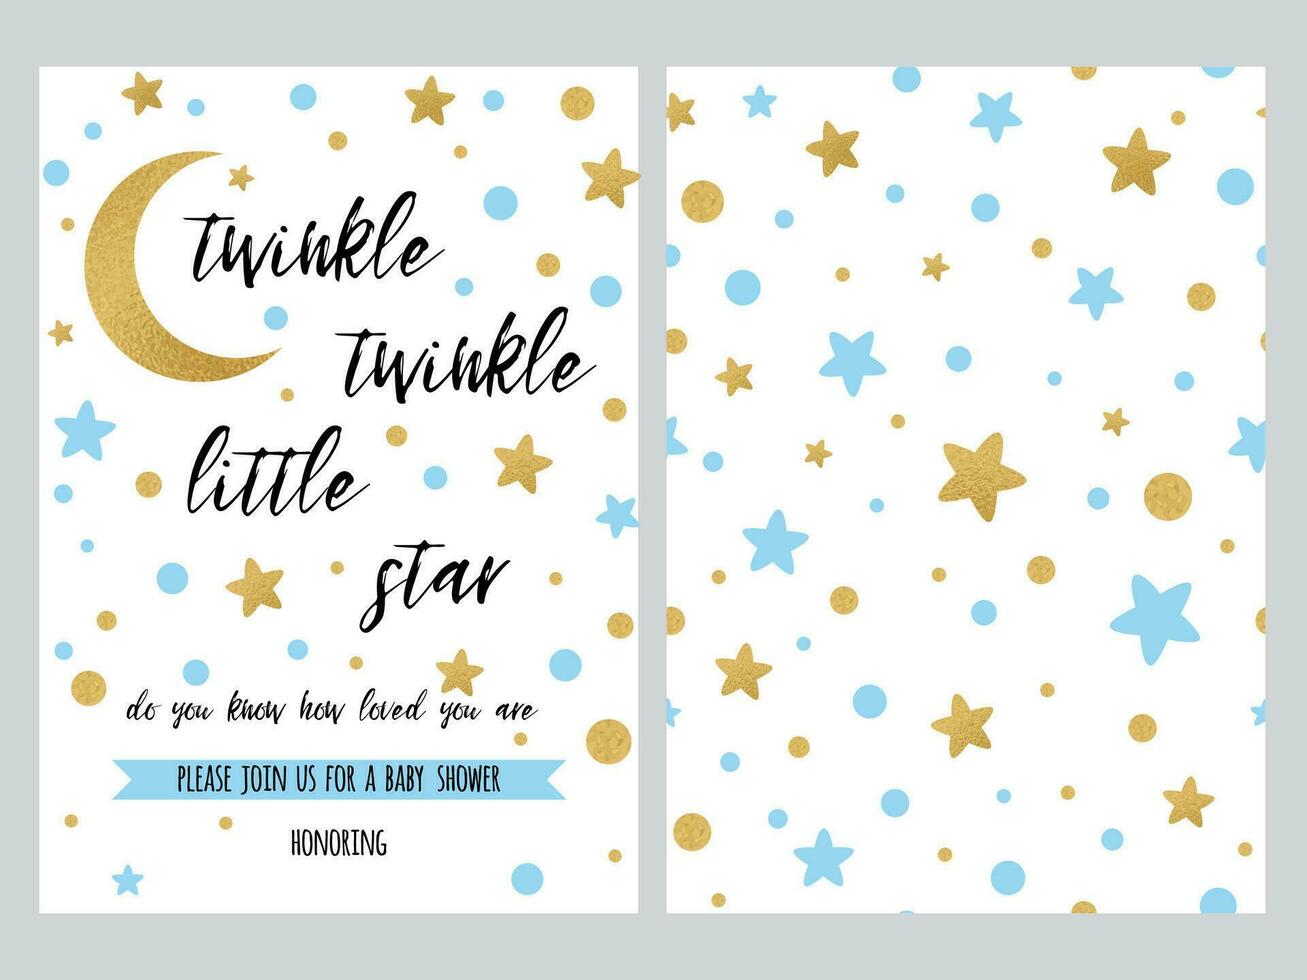 bebis dusch inbjudan mall med gnistra guld blå stjärnor, bakgrund. mild tindra baner för barn födelsedag fest, grattis, inbjudan. vektor illustration logotyp, tecken märka uppsättning